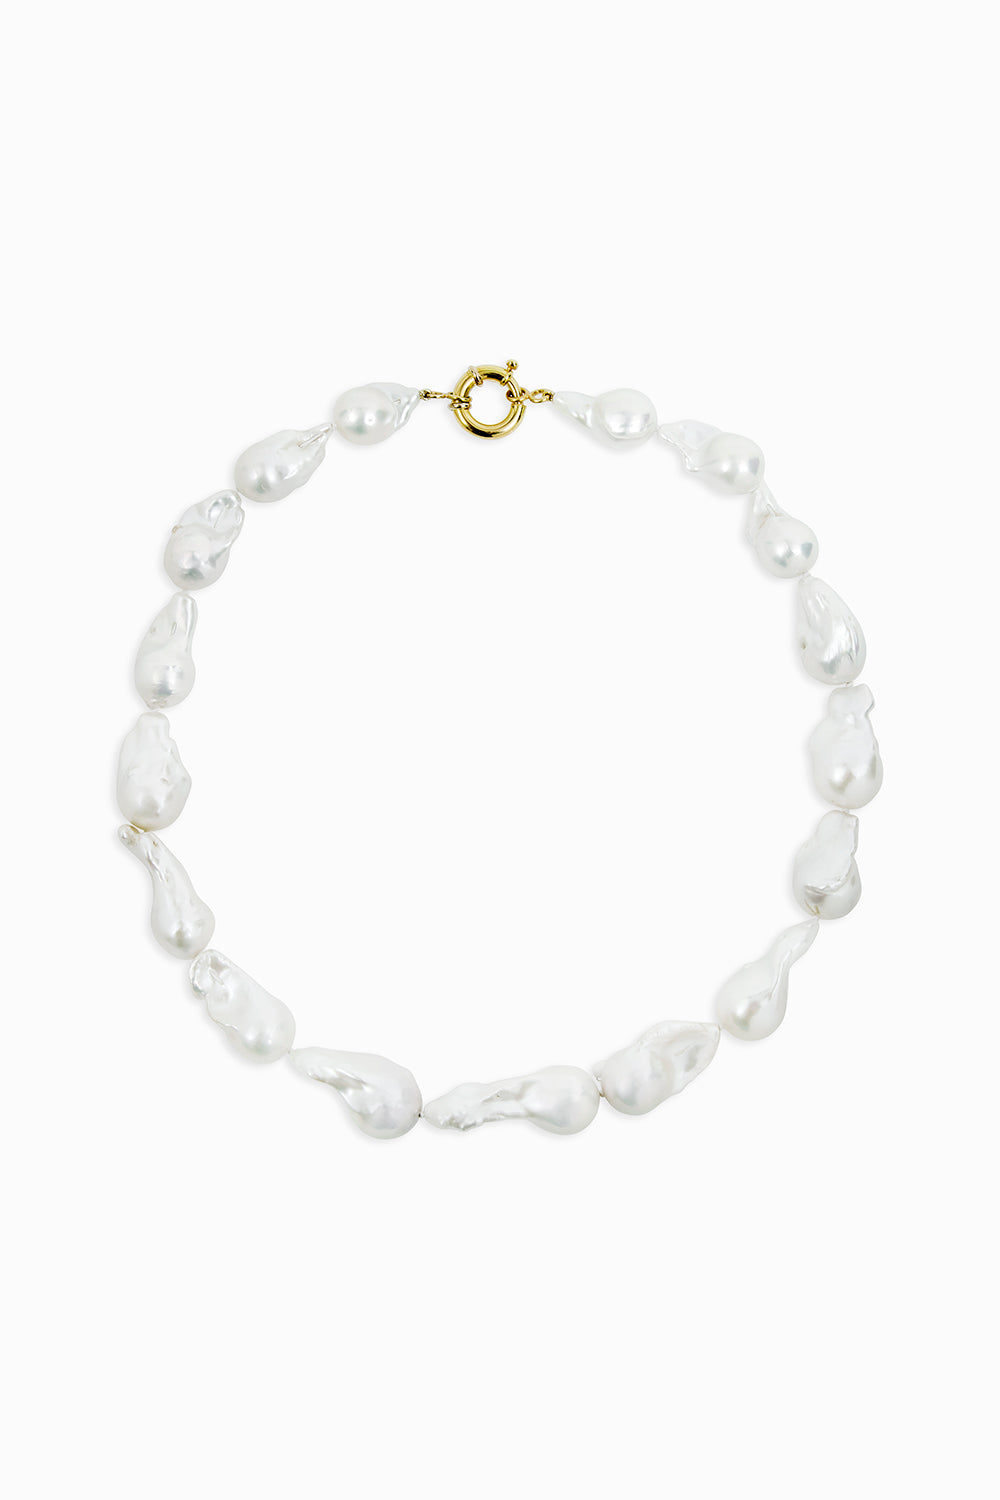 Baroque pearls necklace